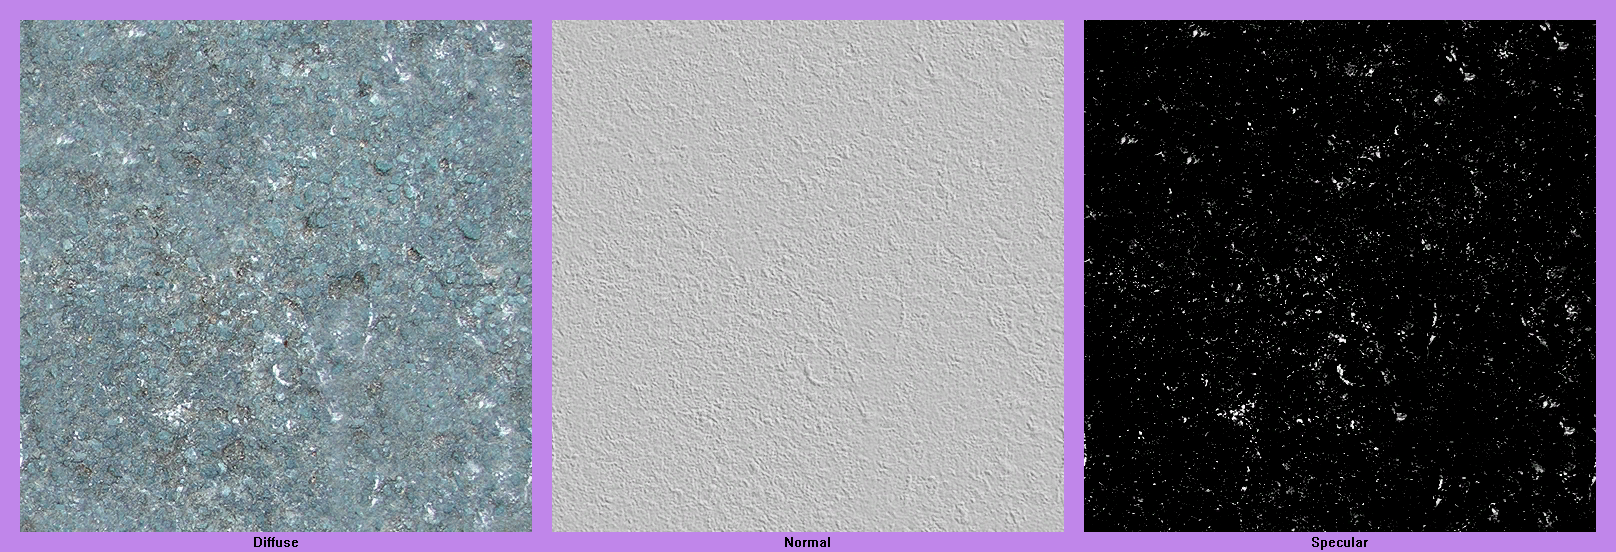 LittleBigPlanet - Blue Concrete